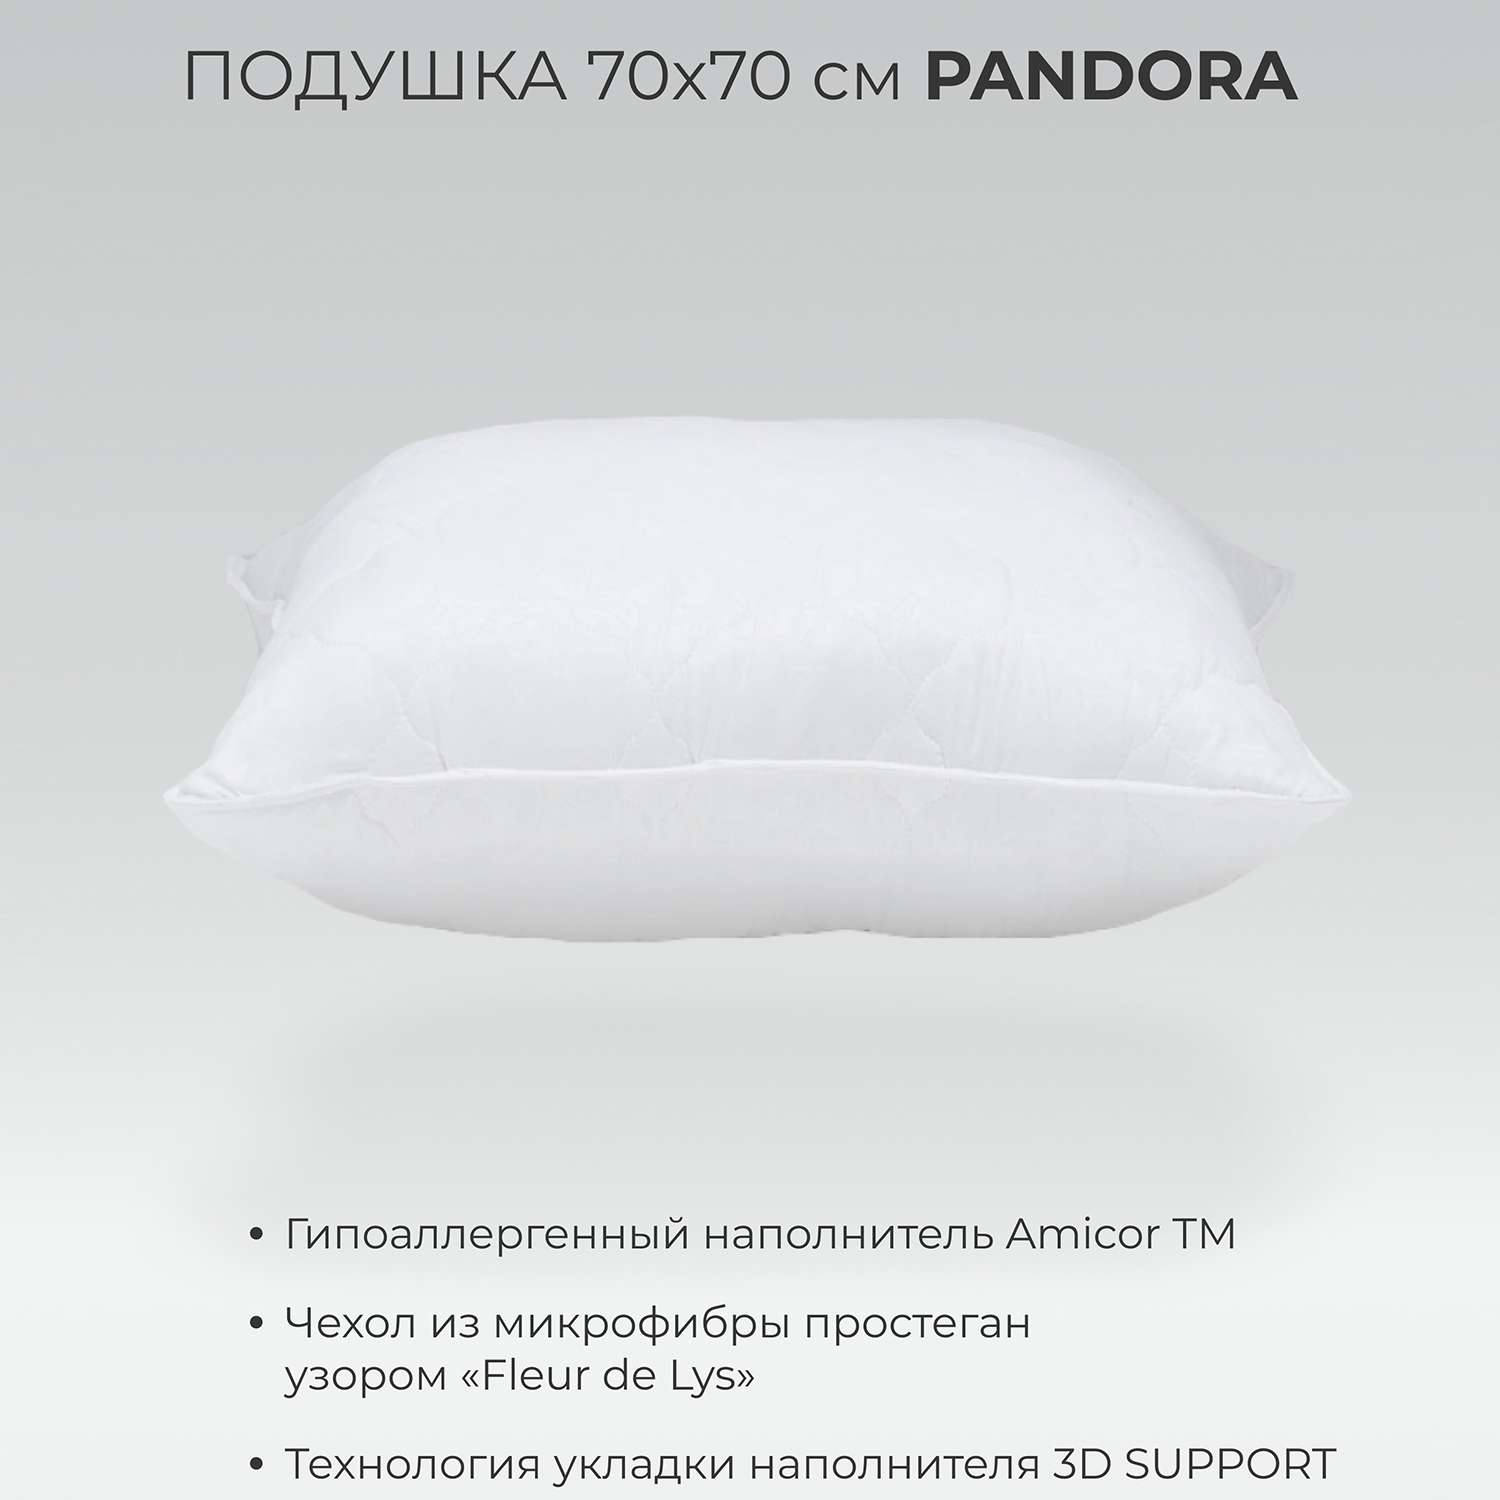 Подушка SONNO PANDORA 70х70 см гипоаллергенный наполнитель Amicor TM - фото 2